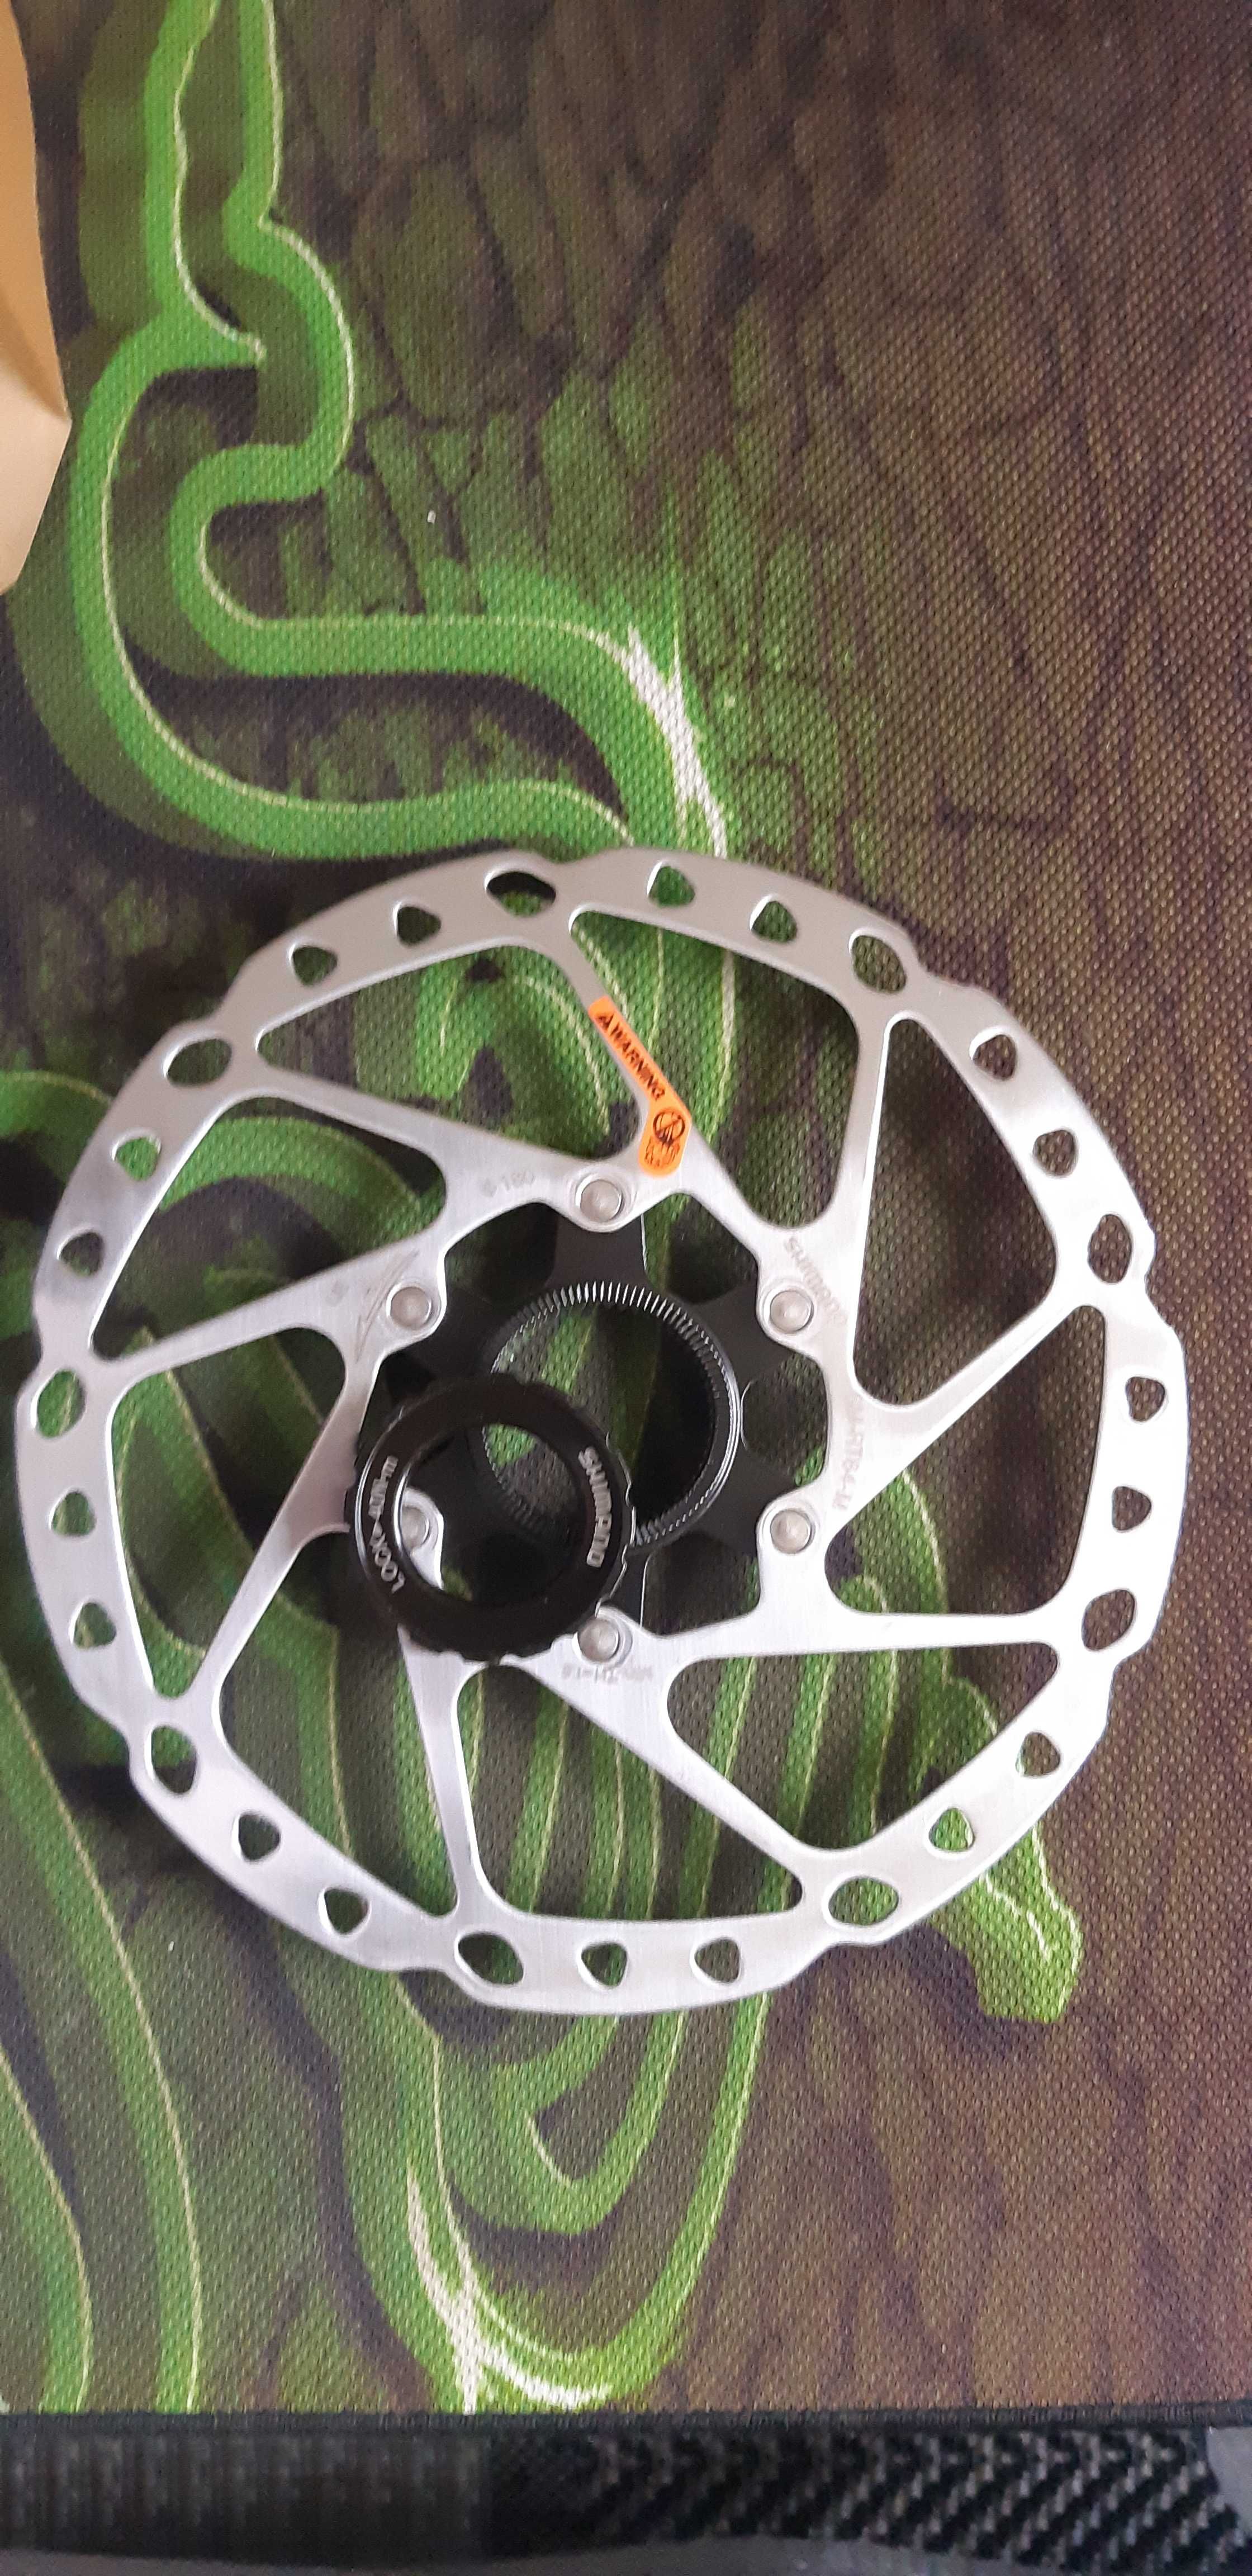 Ротор тормозной диск Shimano RT64-RT54 160мм 180мм 203мм